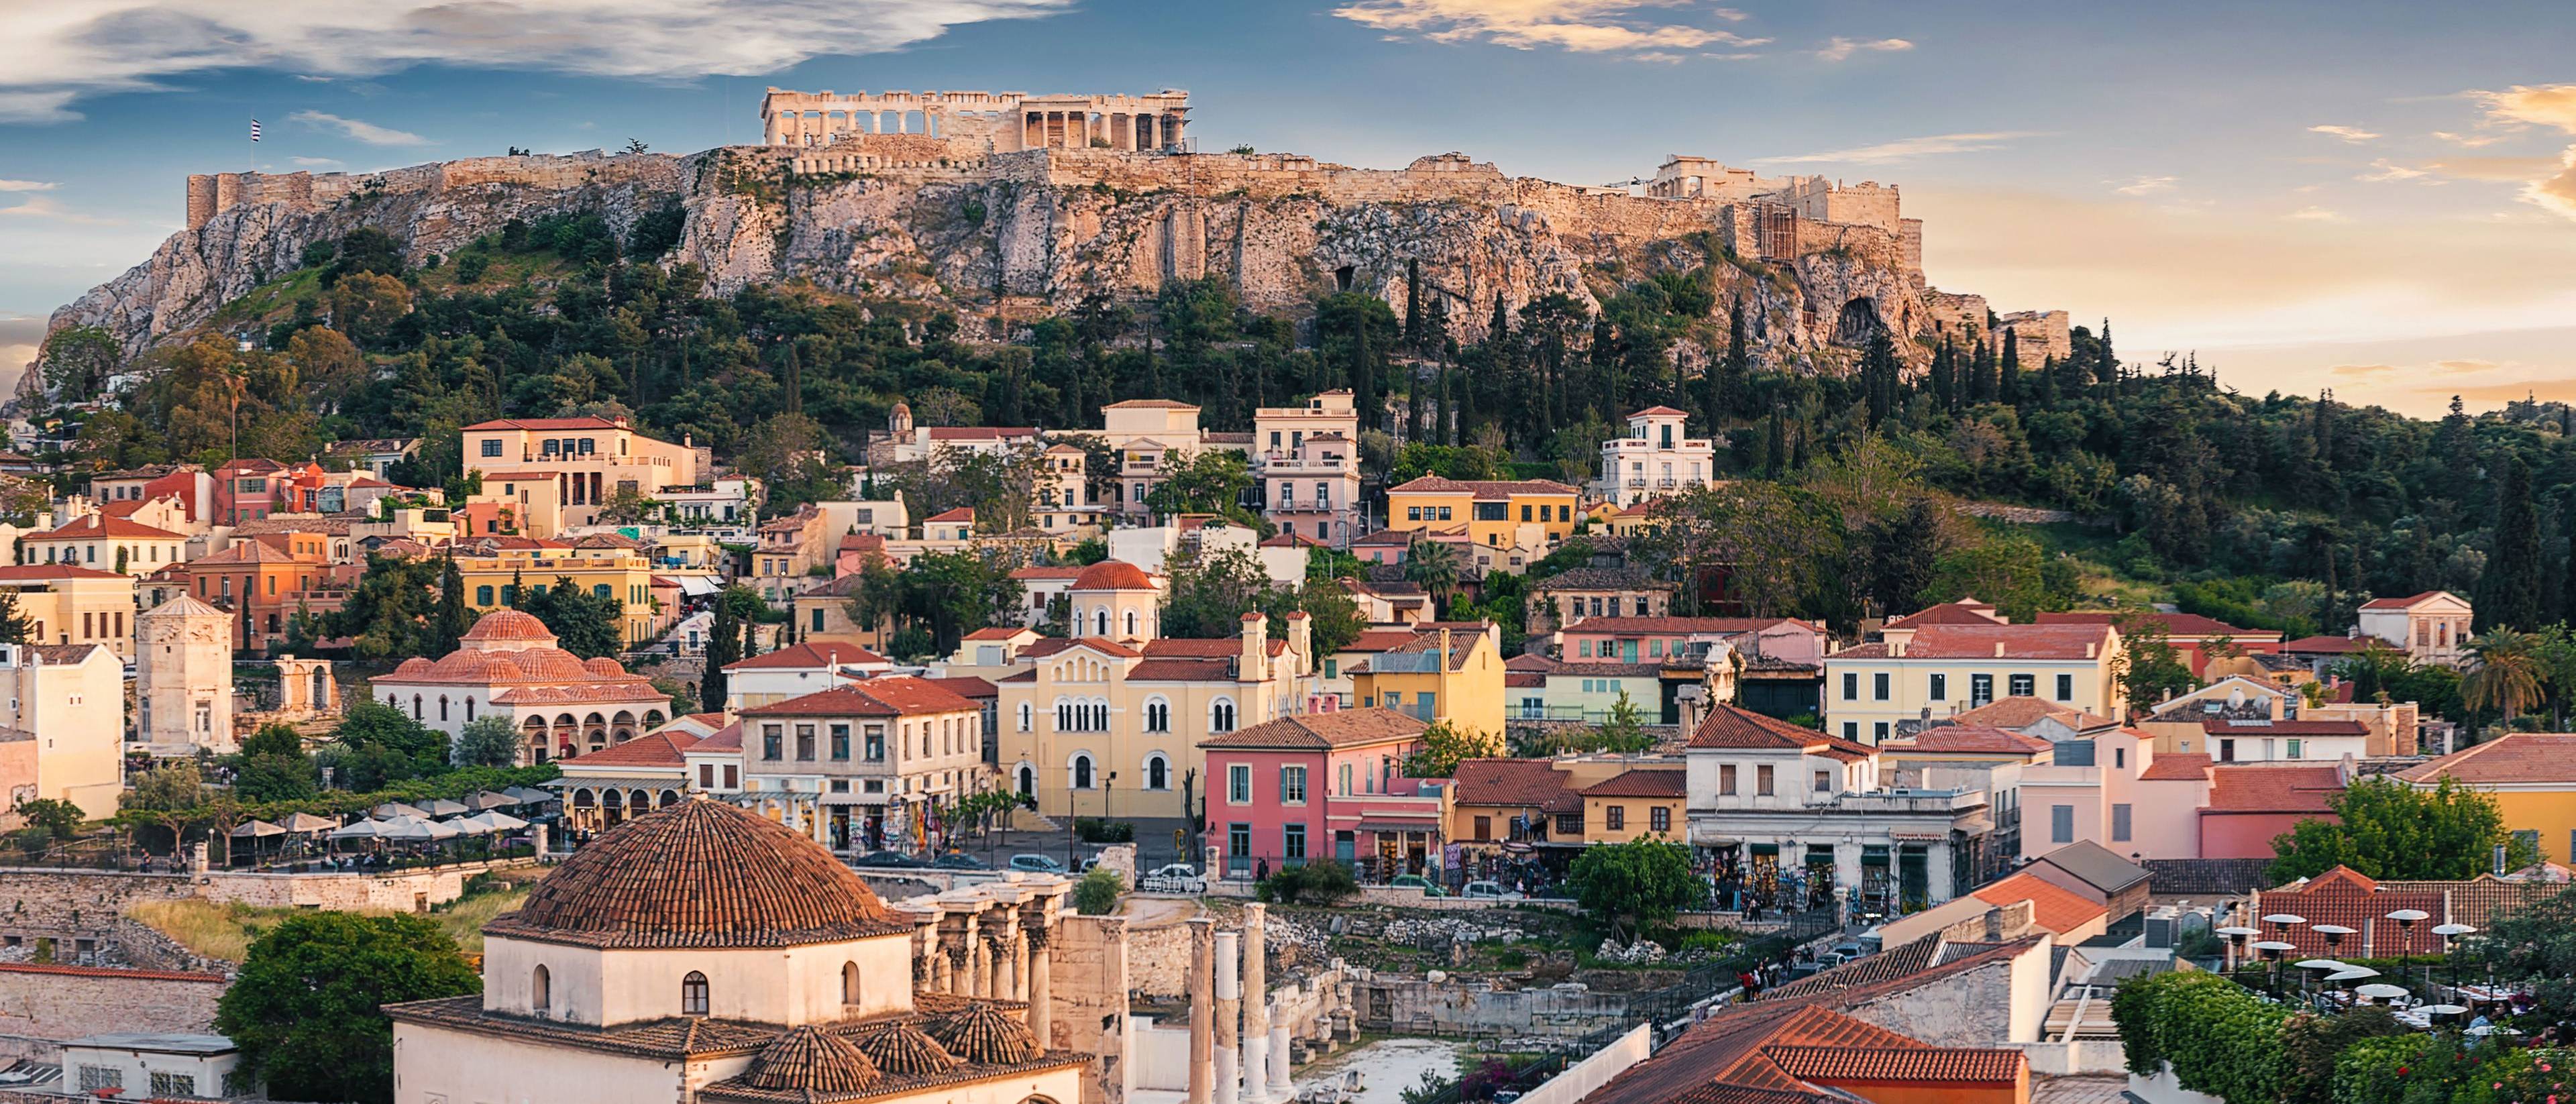 Willkommen in Athen!
